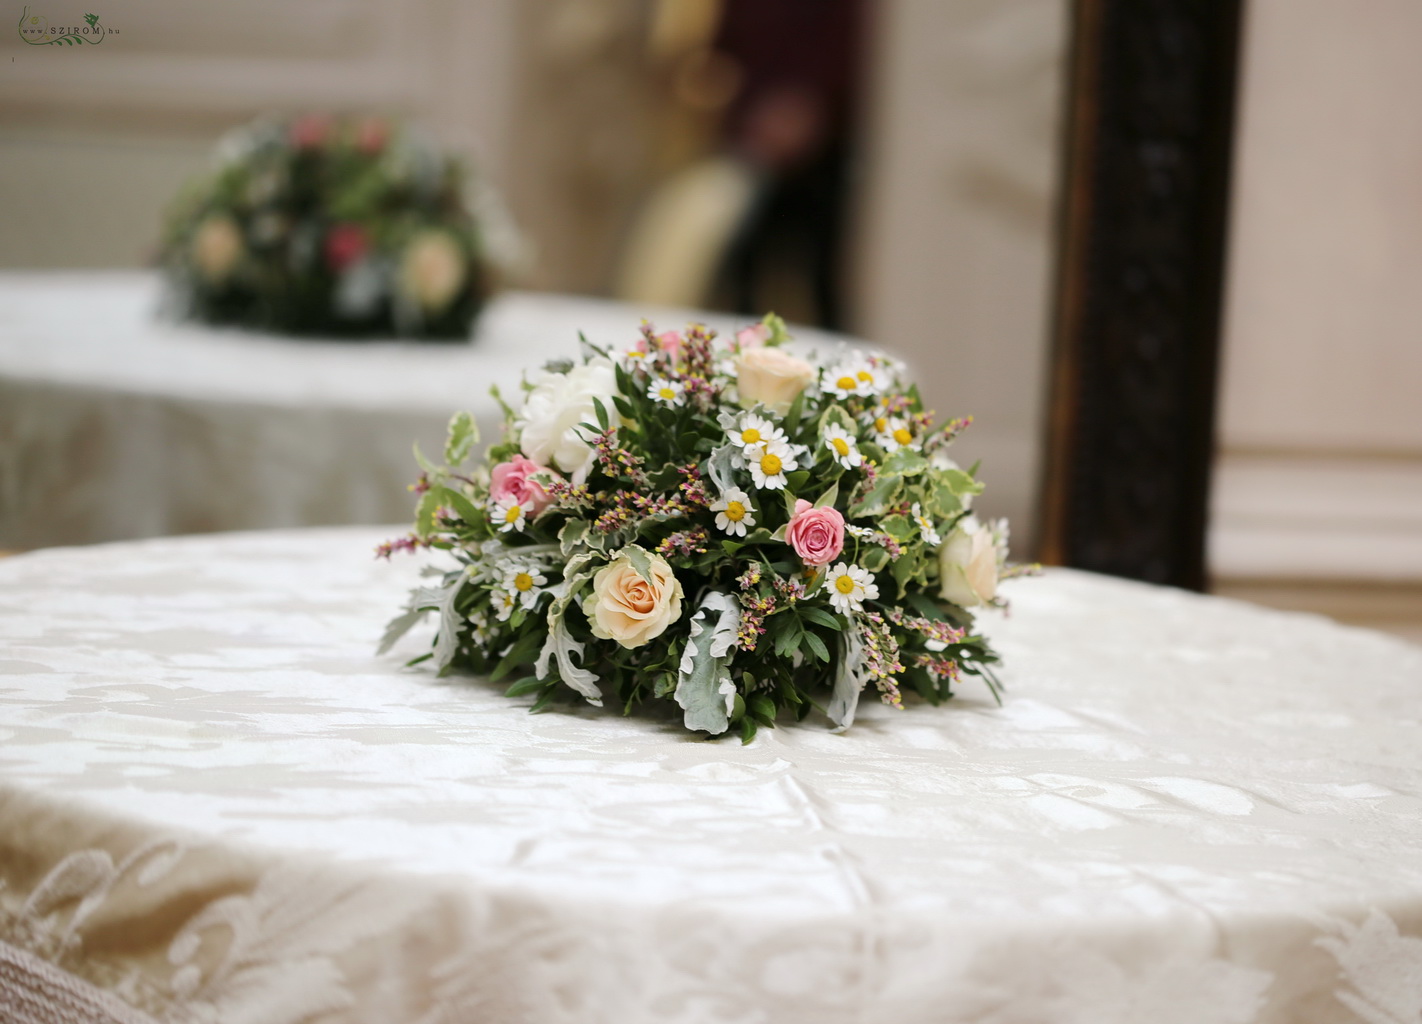 Mezei sílusú apró virágos asztal díszítés (kamilla, frézia, sóvirág, bokros rózsa, hamvaska, szürke, barack, rózsaszín, fehér) , Festetics palota, Budapest